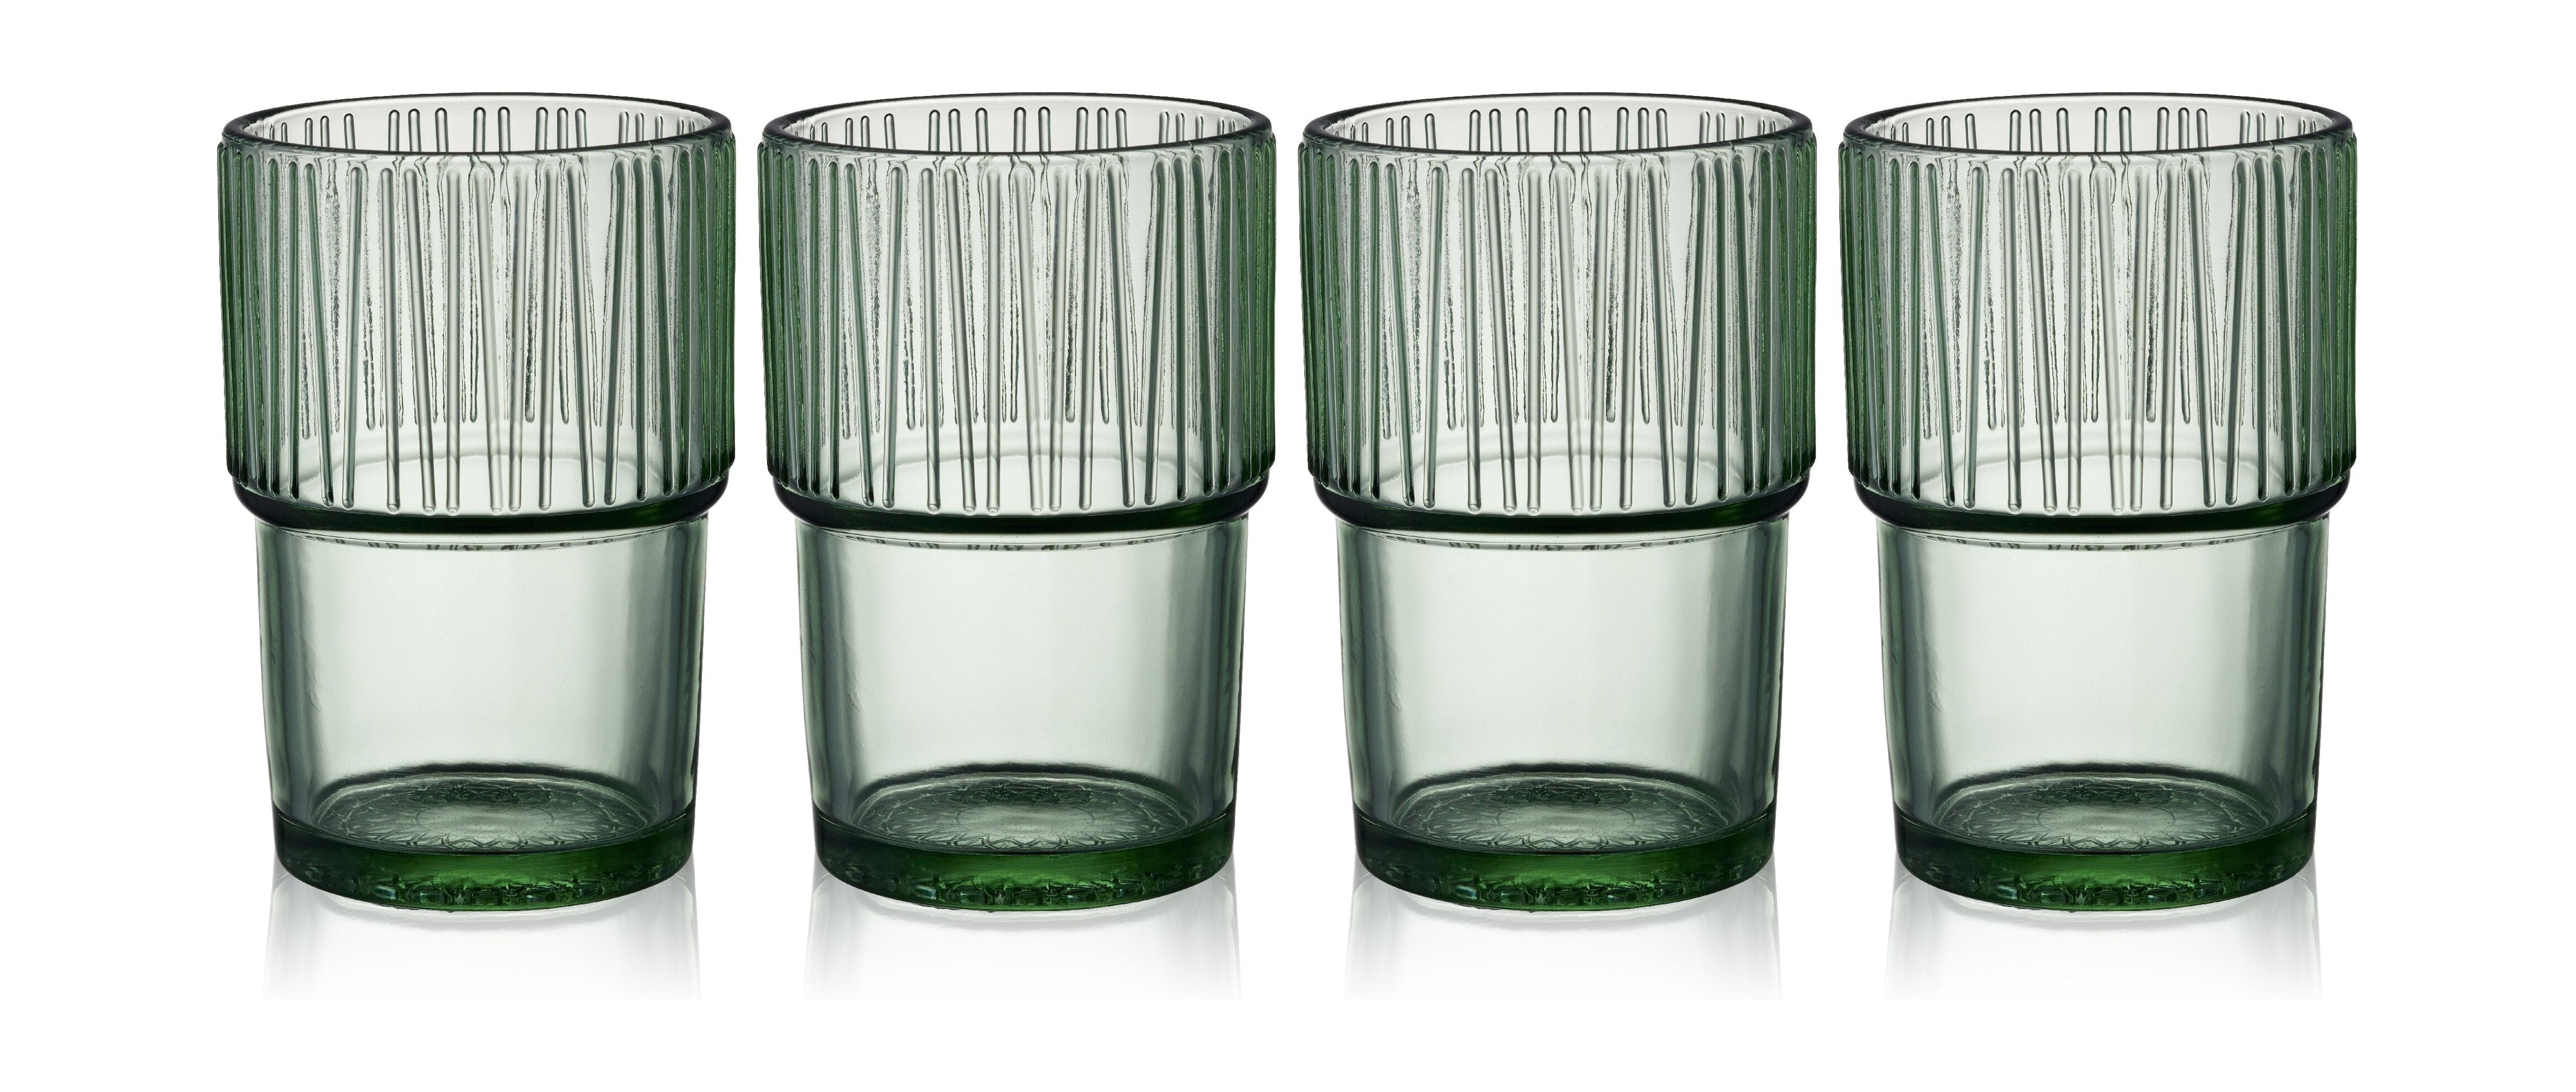 Bitz Kusintha Cafe Glass 12,5 cm 38 Cl 4 szt., Zielony